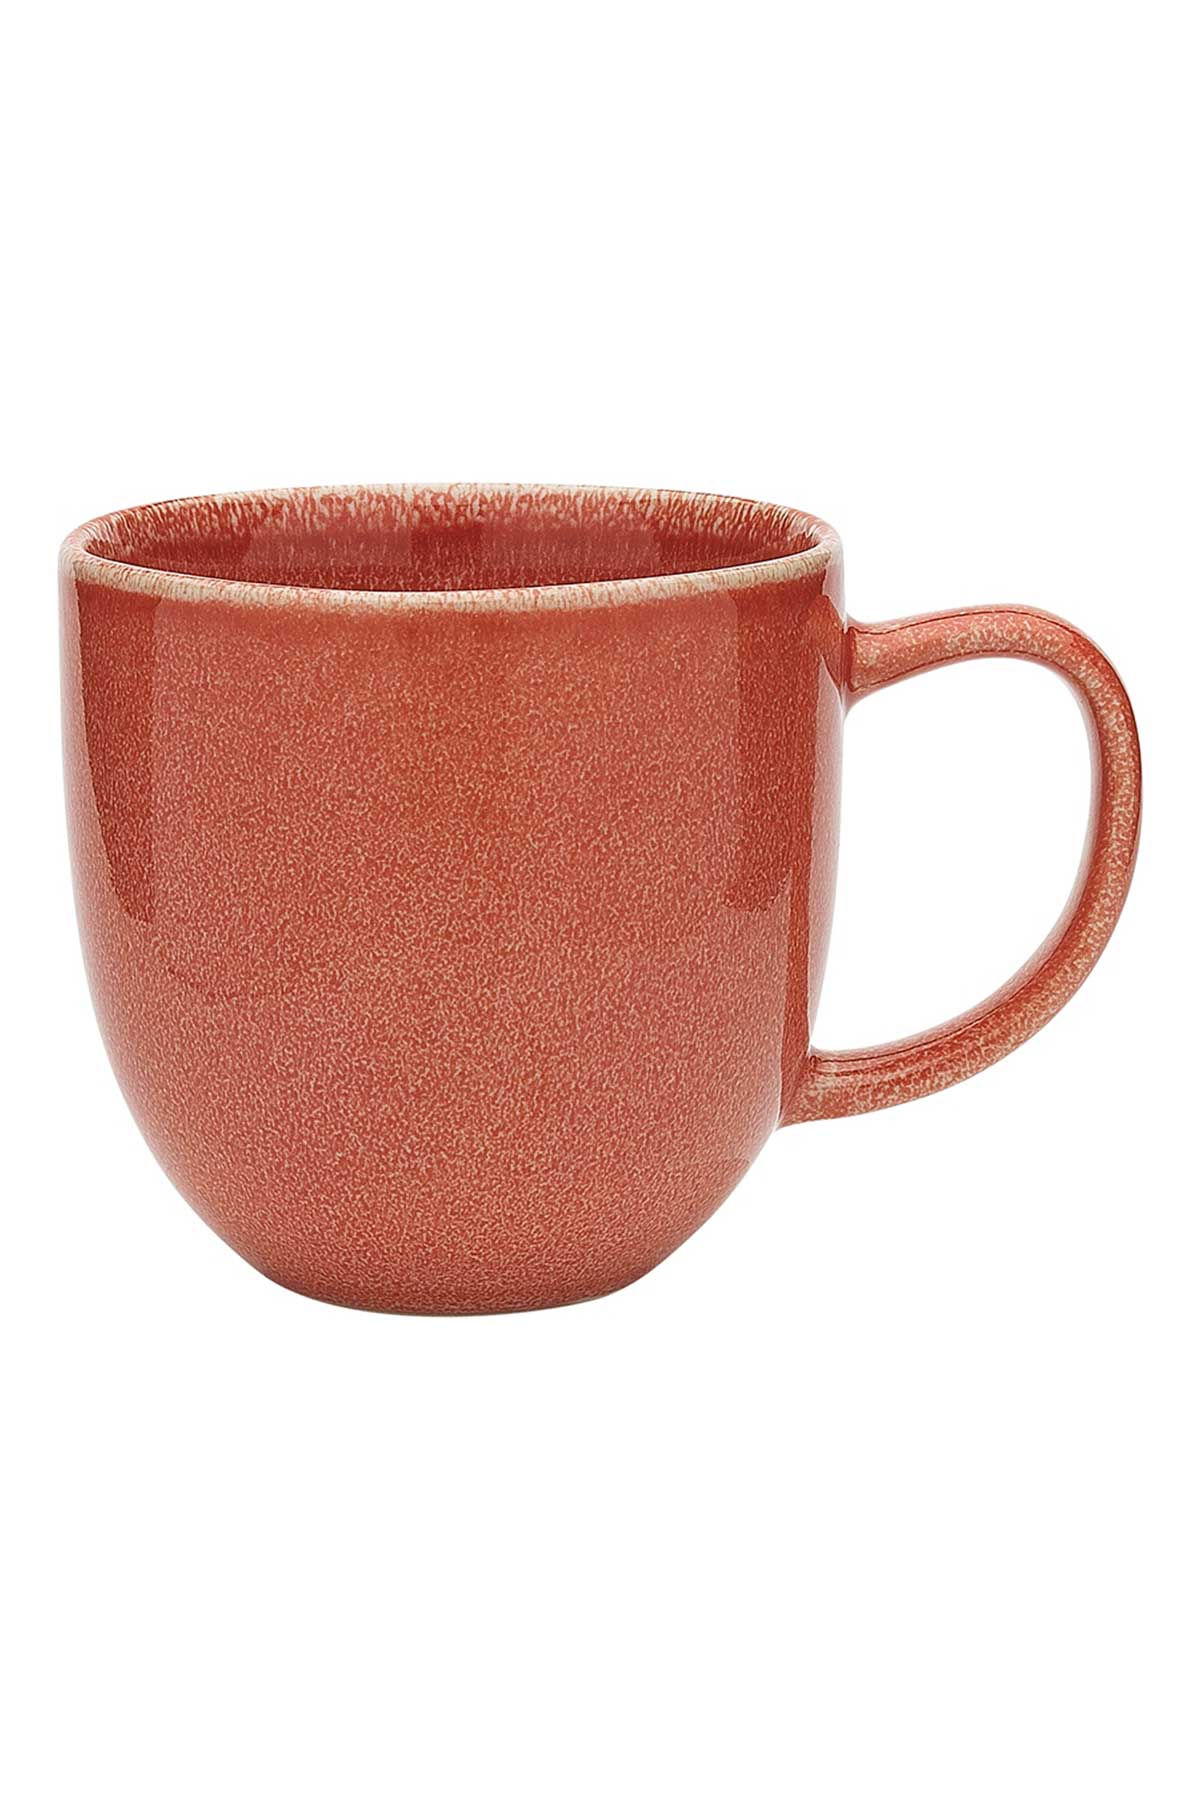 Dwell mug in Rose